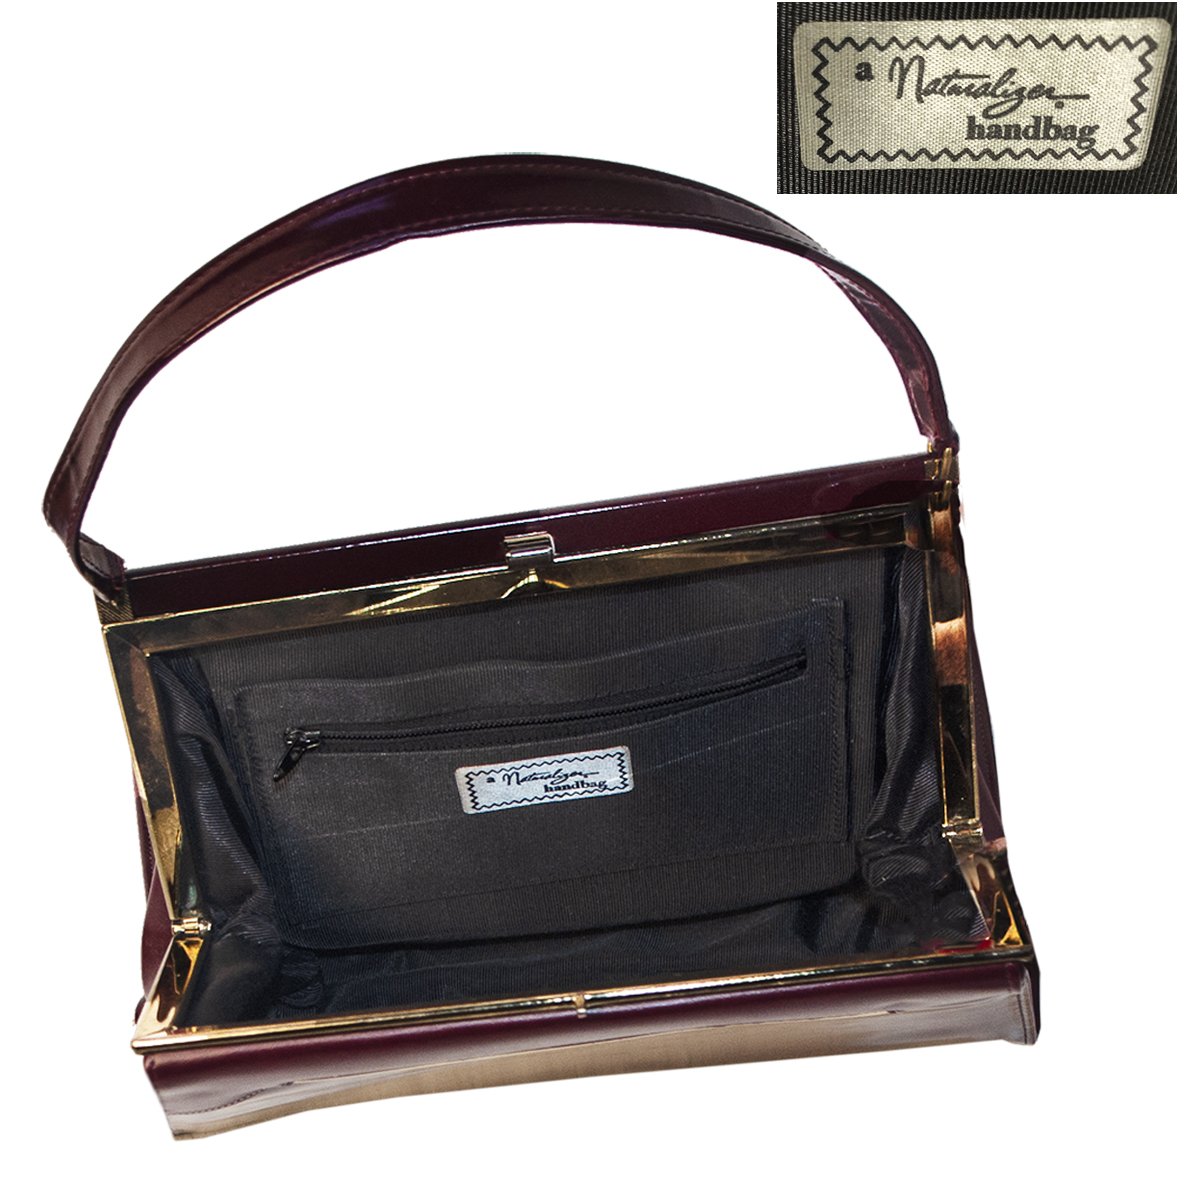 Vintage Naturalizer Two Tone Burgundy Structured Handbag, Gold Hardware